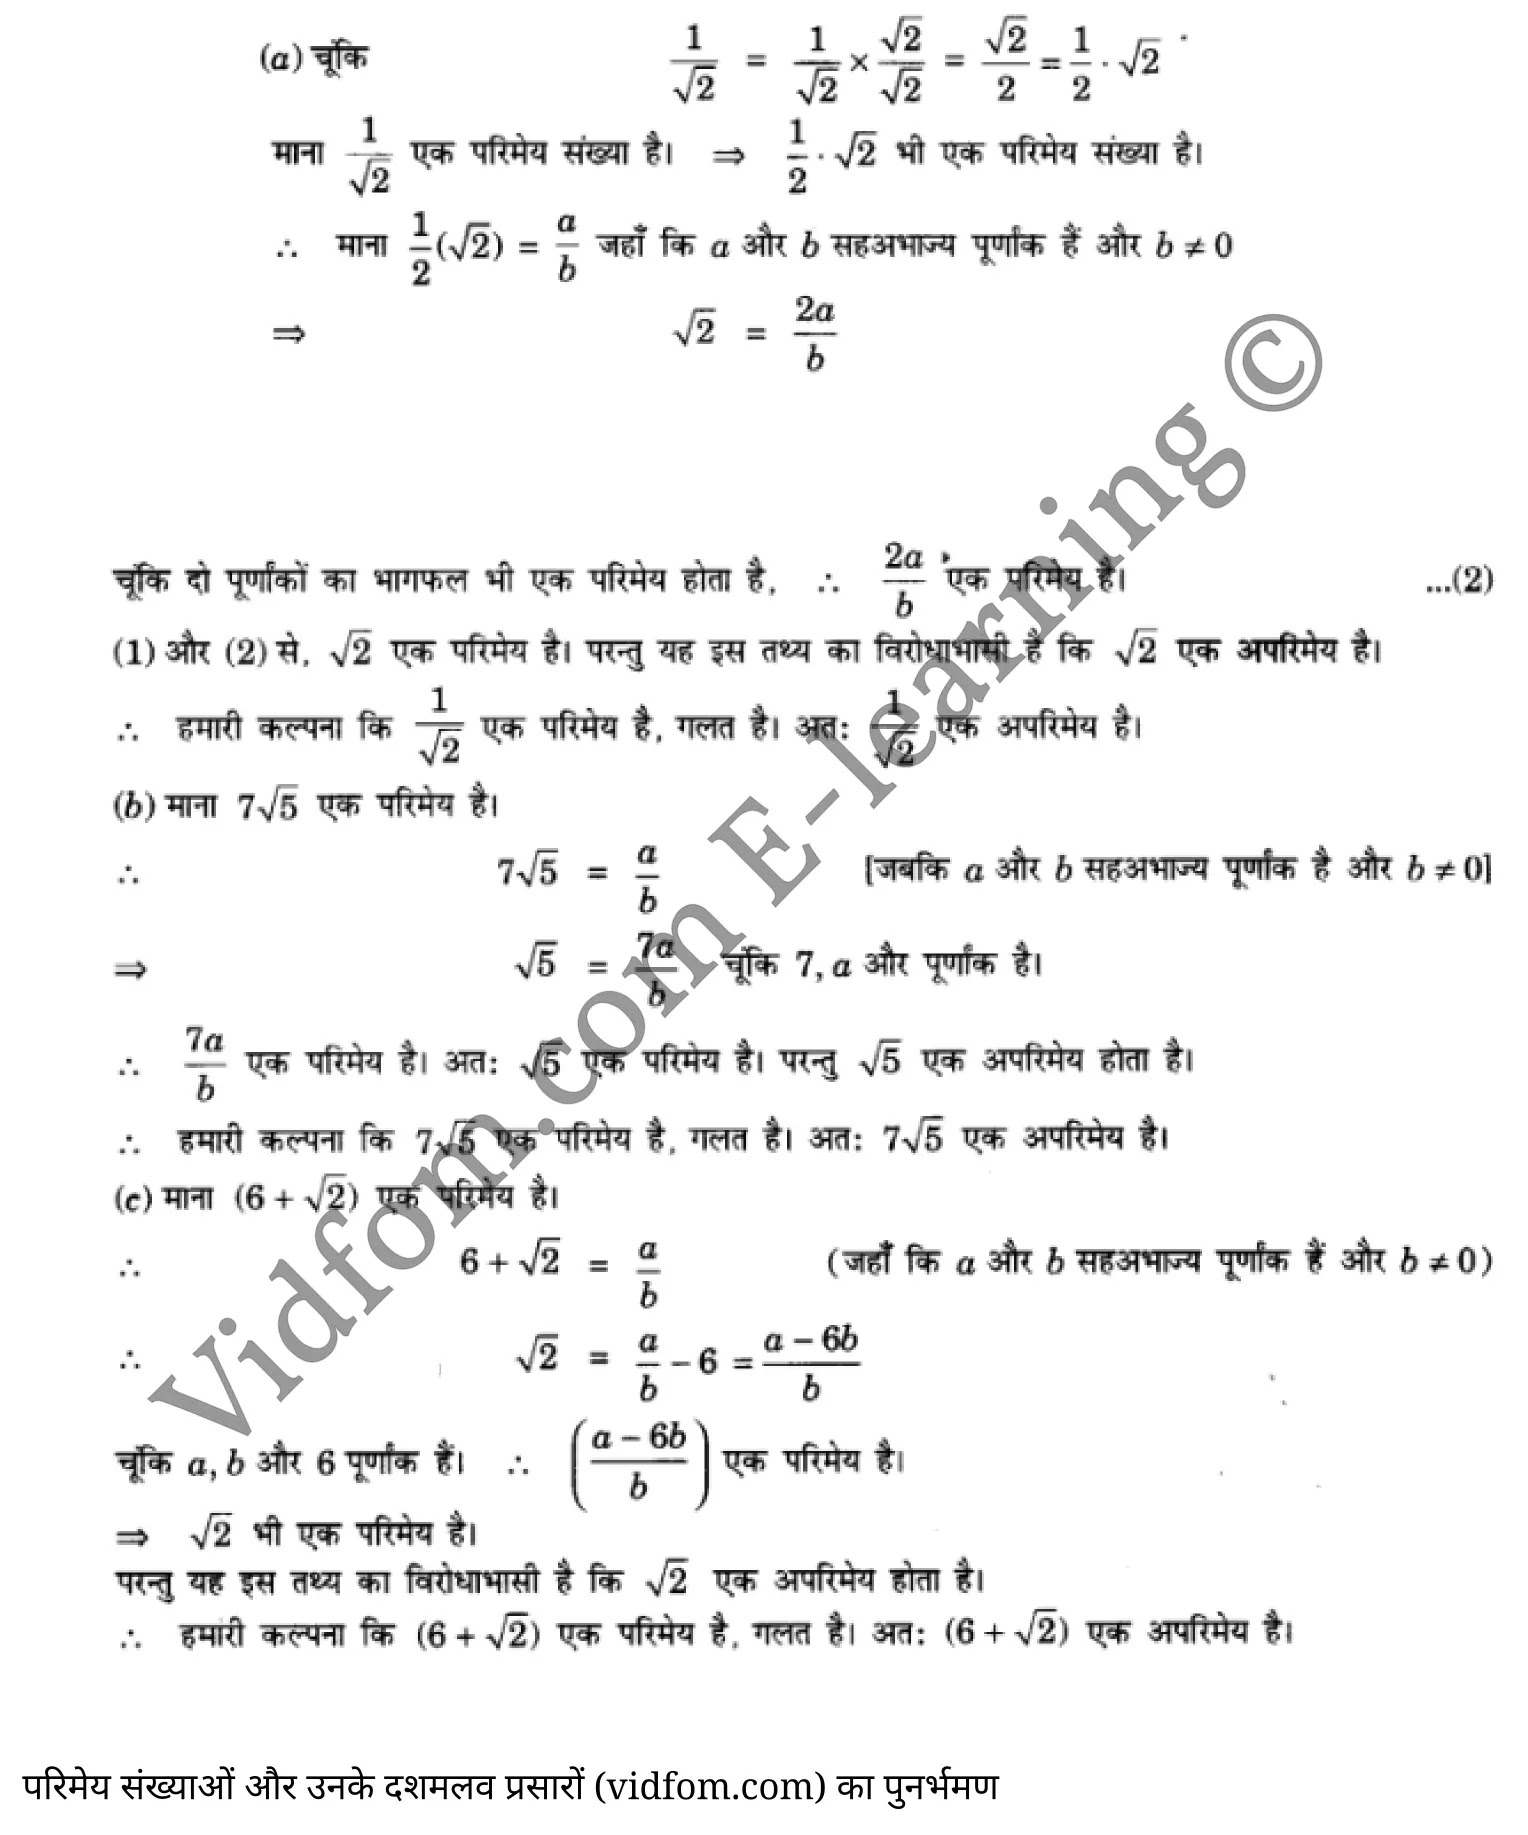 कक्षा 10 गणित  के नोट्स  हिंदी में एनसीईआरटी समाधान,     class 10 Maths chapter 1,   class 10 Maths chapter 1 ncert solutions in Maths,  class 10 Maths chapter 1 notes in hindi,   class 10 Maths chapter 1 question answer,   class 10 Maths chapter 1 notes,   class 10 Maths chapter 1 class 10 Maths  chapter 1 in  hindi,    class 10 Maths chapter 1 important questions in  hindi,   class 10 Maths hindi  chapter 1 notes in hindi,   class 10 Maths  chapter 1 test,   class 10 Maths  chapter 1 class 10 Maths  chapter 1 pdf,   class 10 Maths  chapter 1 notes pdf,   class 10 Maths  chapter 1 exercise solutions,  class 10 Maths  chapter 1,  class 10 Maths  chapter 1 notes study rankers,  class 10 Maths  chapter 1 notes,   class 10 Maths hindi  chapter 1 notes,    class 10 Maths   chapter 1  class 10  notes pdf,  class 10 Maths  chapter 1 class 10  notes  ncert,  class 10 Maths  chapter 1 class 10 pdf,   class 10 Maths  chapter 1  book,   class 10 Maths  chapter 1 quiz class 10  ,    10  th class 10 Maths chapter 1  book up board,   up board 10  th class 10 Maths chapter 1 notes,  class 10 Maths,   class 10 Maths ncert solutions in Maths,   class 10 Maths notes in hindi,   class 10 Maths question answer,   class 10 Maths notes,  class 10 Maths class 10 Maths  chapter 1 in  hindi,    class 10 Maths important questions in  hindi,   class 10 Maths notes in hindi,    class 10 Maths test,  class 10 Maths class 10 Maths  chapter 1 pdf,   class 10 Maths notes pdf,   class 10 Maths exercise solutions,   class 10 Maths,  class 10 Maths notes study rankers,   class 10 Maths notes,  class 10 Maths notes,   class 10 Maths  class 10  notes pdf,   class 10 Maths class 10  notes  ncert,   class 10 Maths class 10 pdf,   class 10 Maths  book,  class 10 Maths quiz class 10  ,  10  th class 10 Maths    book up board,    up board 10  th class 10 Maths notes,      कक्षा 10 गणित अध्याय 1 ,  कक्षा 10 गणित, कक्षा 10 गणित अध्याय 1  के नोट्स हिंदी में,  कक्षा 10 का गणित अध्याय 1 का प्रश्न उत्तर,  कक्षा 10 गणित अध्याय 1  के नोट्स,  10 कक्षा गणित  हिंदी में, कक्षा 10 गणित अध्याय 1  हिंदी में,  कक्षा 10 गणित अध्याय 1  महत्वपूर्ण प्रश्न हिंदी में, कक्षा 10   हिंदी के नोट्स  हिंदी में, गणित हिंदी  कक्षा 10 नोट्स pdf,    गणित हिंदी  कक्षा 10 नोट्स 2021 ncert,  गणित हिंदी  कक्षा 10 pdf,   गणित हिंदी  पुस्तक,   गणित हिंदी की बुक,   गणित हिंदी  प्रश्नोत्तरी class 10 ,  10   वीं गणित  पुस्तक up board,   बिहार बोर्ड 10  पुस्तक वीं गणित नोट्स,    गणित  कक्षा 10 नोट्स 2021 ncert,   गणित  कक्षा 10 pdf,   गणित  पुस्तक,   गणित की बुक,   गणित  प्रश्नोत्तरी class 10,   कक्षा 10 गणित,  कक्षा 10 गणित  के नोट्स हिंदी में,  कक्षा 10 का गणित का प्रश्न उत्तर,  कक्षा 10 गणित  के नोट्स, 10 कक्षा गणित 2021  हिंदी में, कक्षा 10 गणित  हिंदी में, कक्षा 10 गणित  महत्वपूर्ण प्रश्न हिंदी में, कक्षा 10 गणित  हिंदी के नोट्स  हिंदी में, गणित हिंदी  कक्षा 10 नोट्स pdf,   गणित हिंदी  कक्षा 10 नोट्स 2021 ncert,   गणित हिंदी  कक्षा 10 pdf,  गणित हिंदी  पुस्तक,   गणित हिंदी की बुक,   गणित हिंदी  प्रश्नोत्तरी class 10 ,  10   वीं गणित  पुस्तक up board,  बिहार बोर्ड 10  पुस्तक वीं गणित नोट्स,    गणित  कक्षा 10 नोट्स 2021 ncert,  गणित  कक्षा 10 pdf,   गणित  पुस्तक,  गणित की बुक,   गणित  प्रश्नोत्तरी   class 10,   10th Maths   book in hindi, 10th Maths notes in hindi, cbse books for class 10  , cbse books in hindi, cbse ncert books, class 10   Maths   notes in hindi,  class 10 Maths hindi ncert solutions, Maths 2020, Maths  2021,